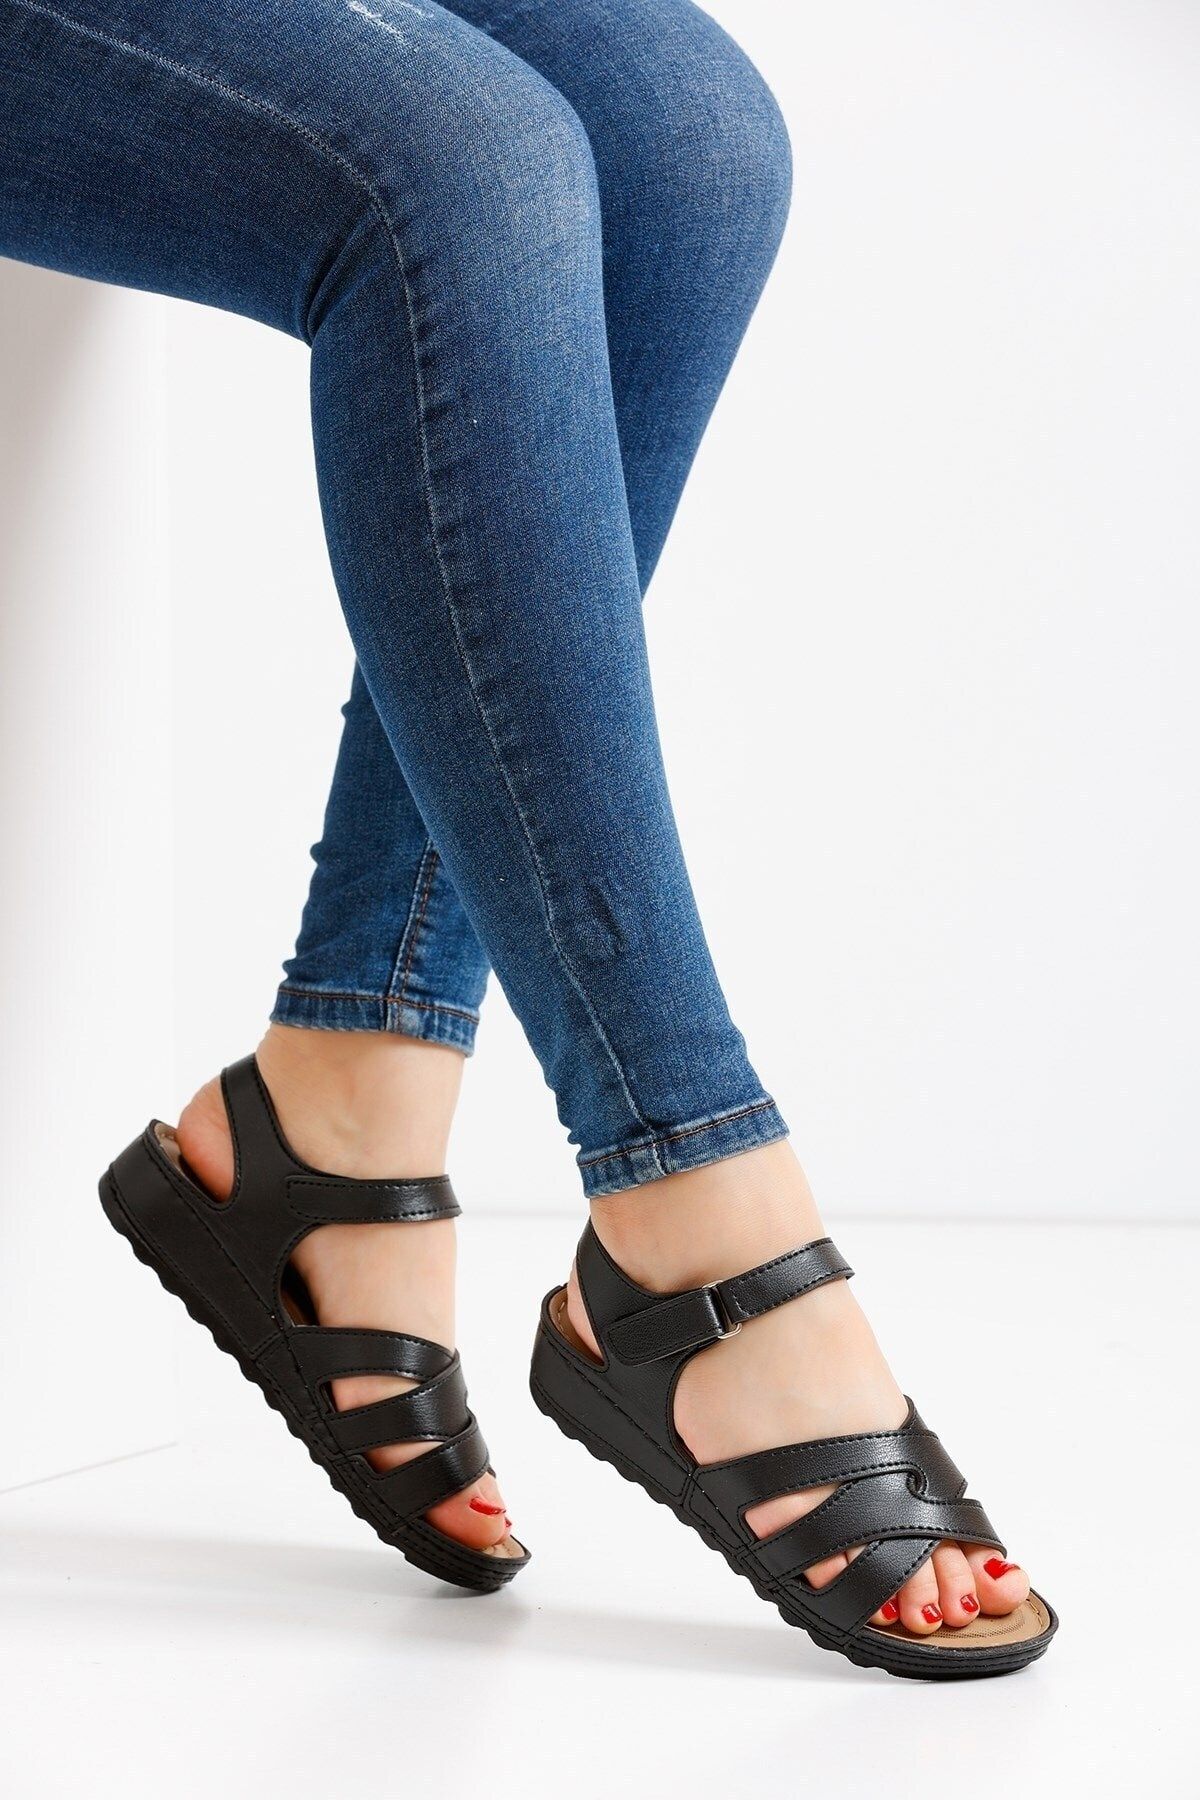 CekModa Anne Cırt Cırtlı Ortapedik ultra Hafif soft taban Yazlık Üç Şeritli Sandalet - siyah